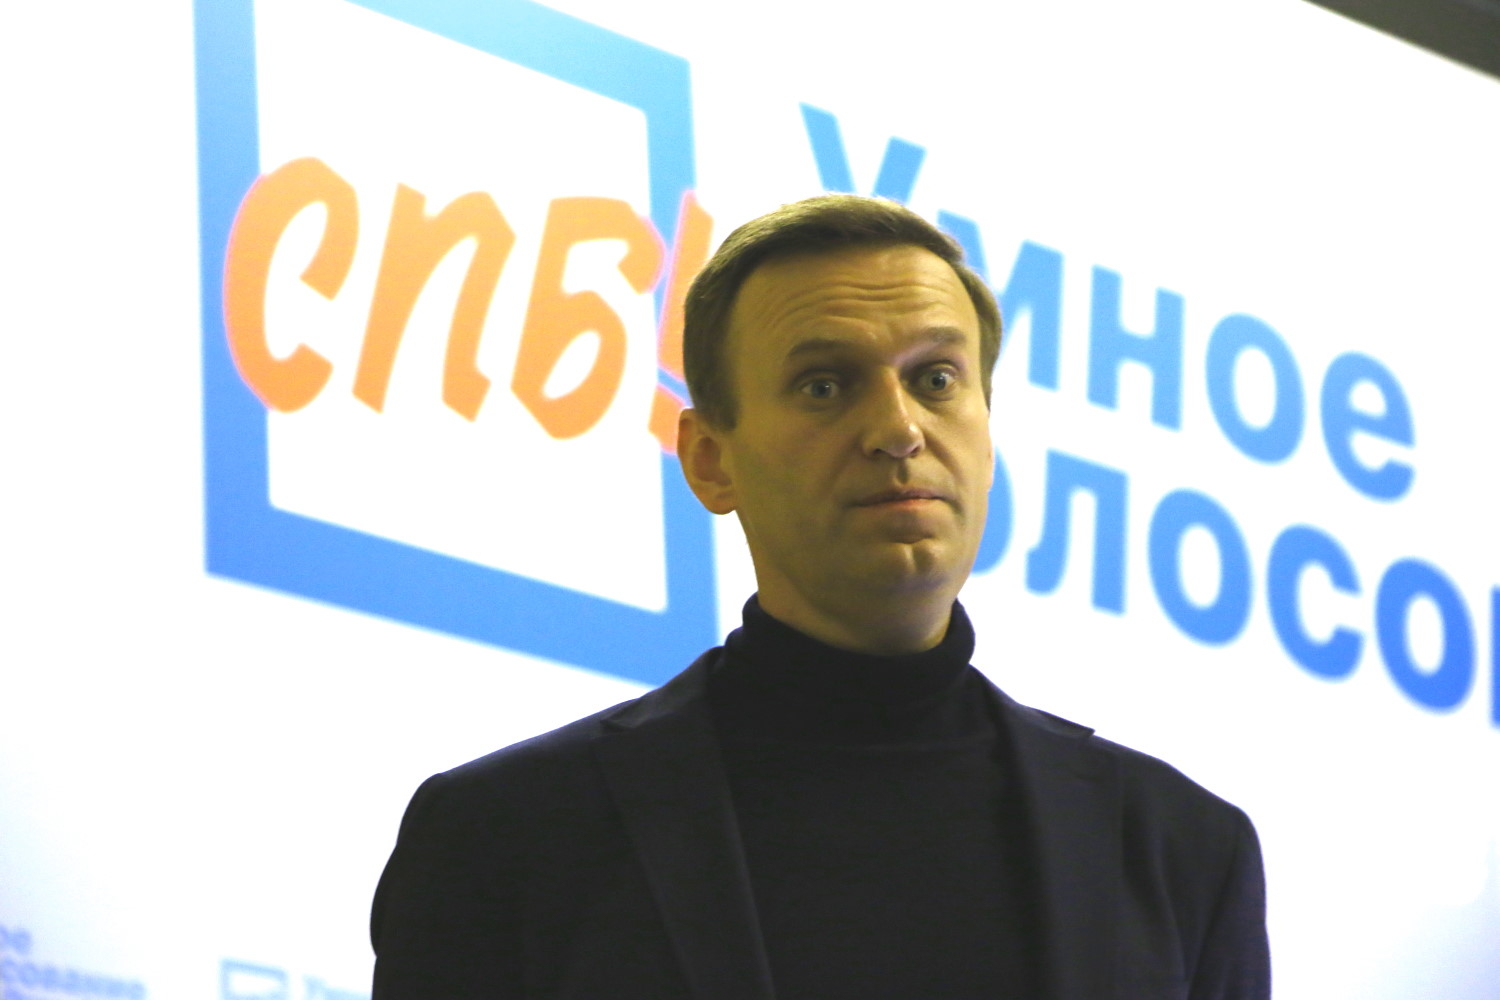 Навальный отсутствует в базе розыска МВД